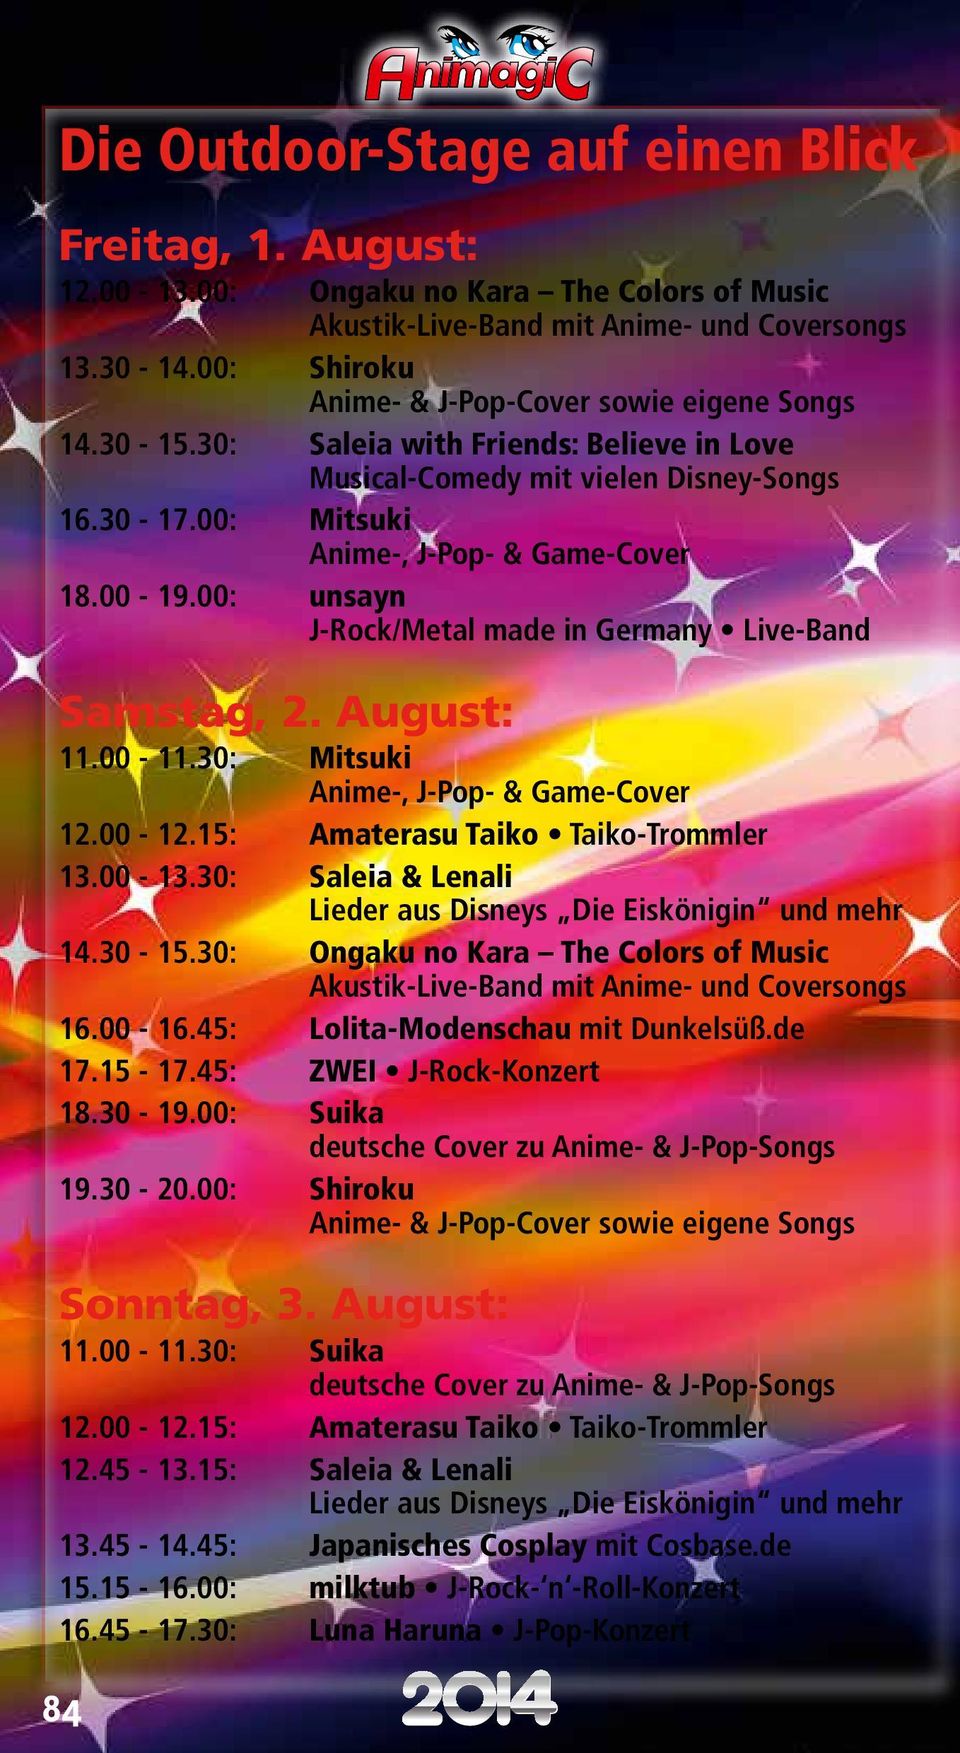 30: Mitsuki Anime-, J-Pop- & Game-Cover 12.00-12.15: Amaterasu Taiko Taiko-Trommler 13.00-13.30: Saleia & Lenali Lieder aus Disneys Die Eiskönigin und mehr 14.30-15.